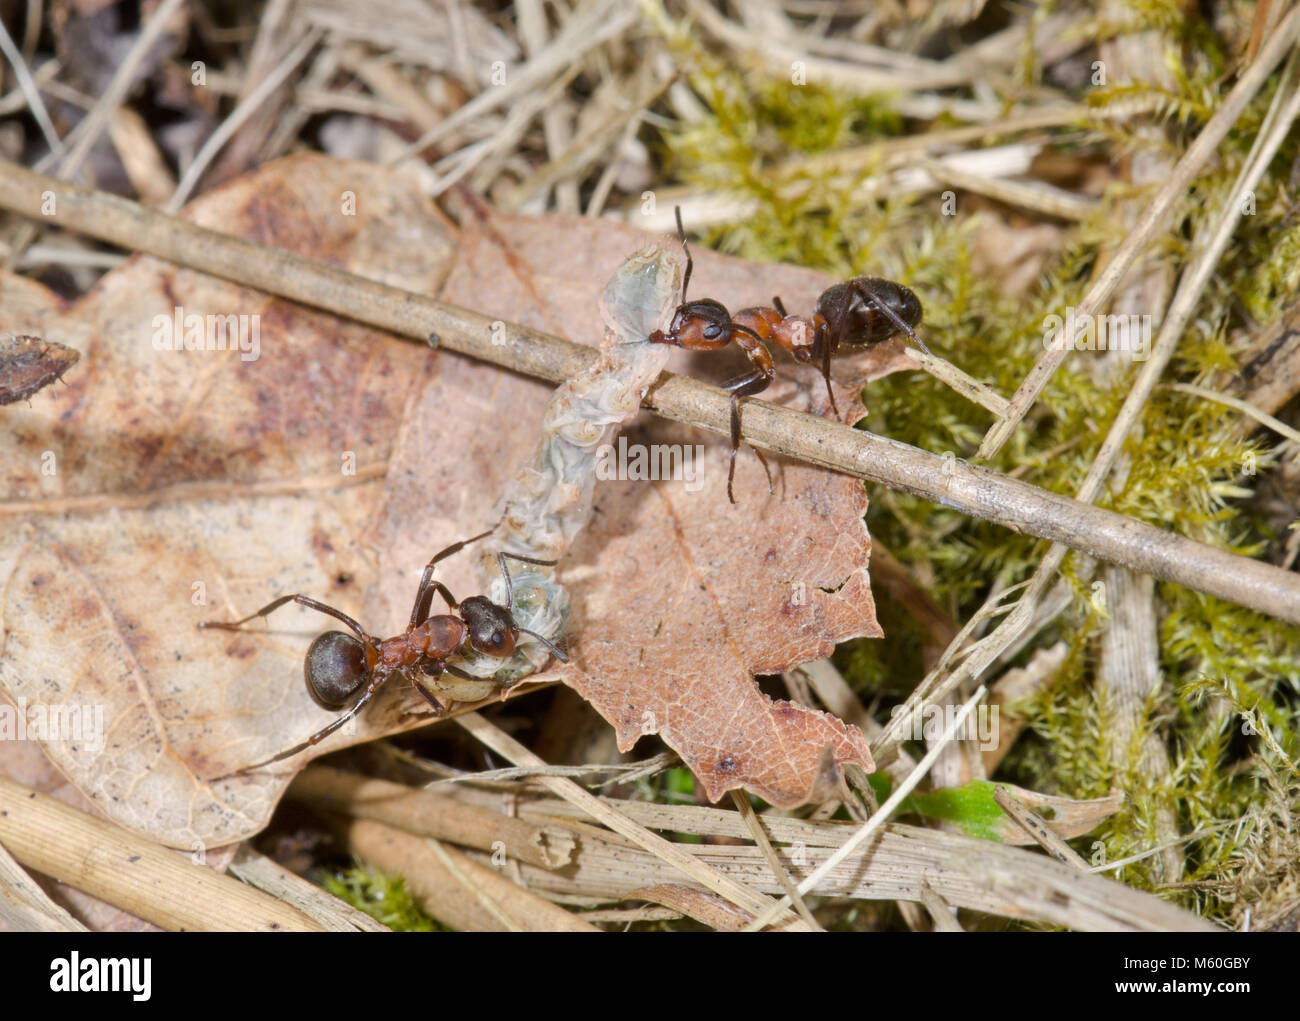 Las hormigas de madera meridional (Formica rufa). Los trabajadores transporte presa de Caterpillar volver al nido. Sussex, UK Foto de stock